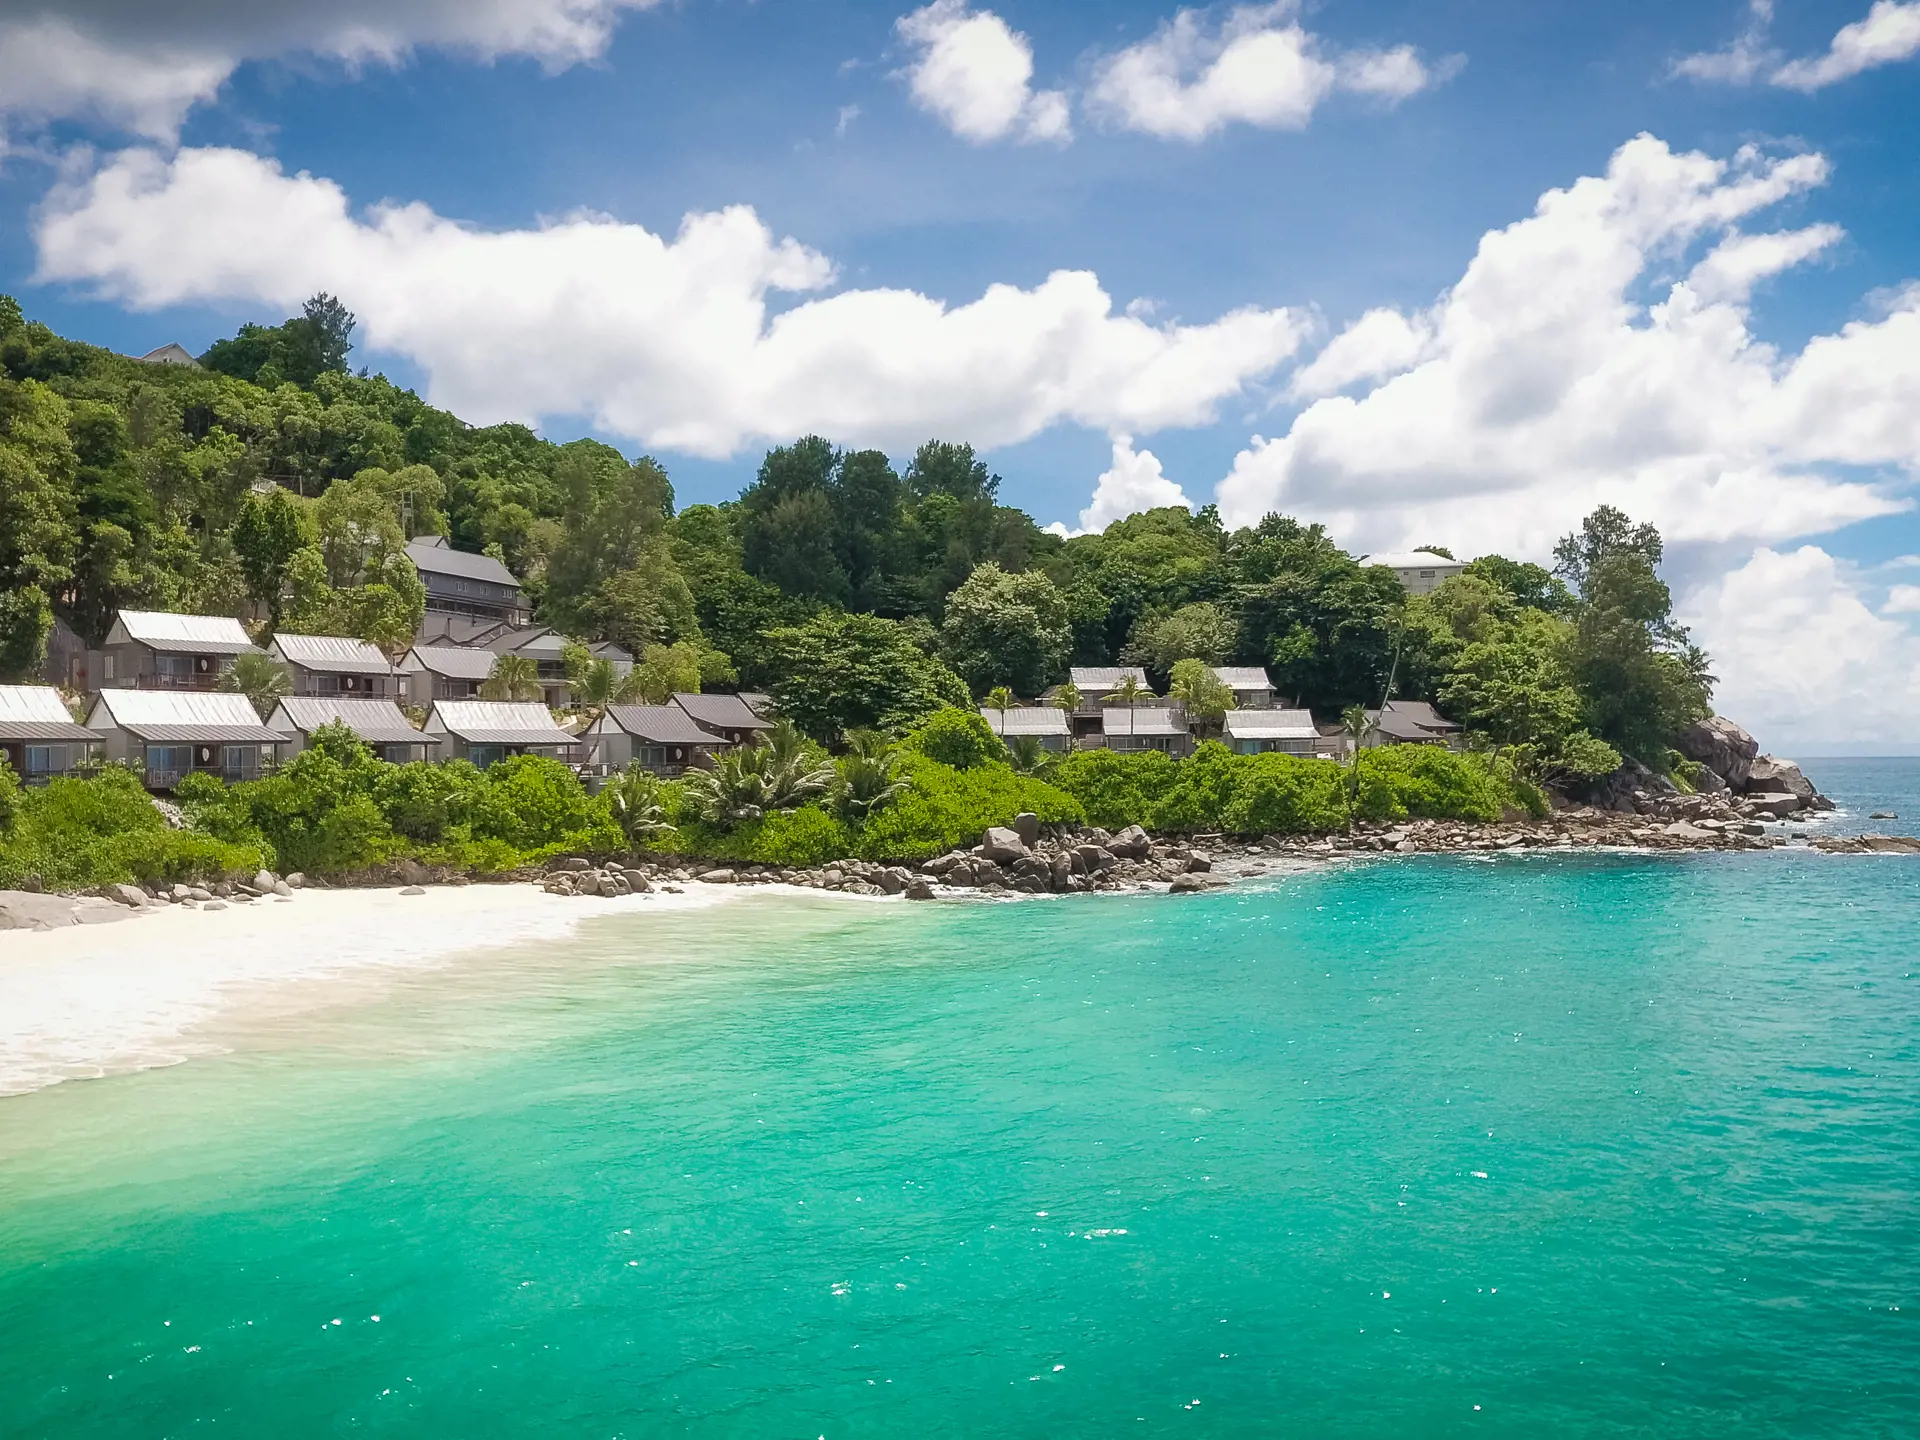 HOTELLET - De flotte hytter er placeret i grønne omgivelser med udsigt over den private strand og det smukke hav.